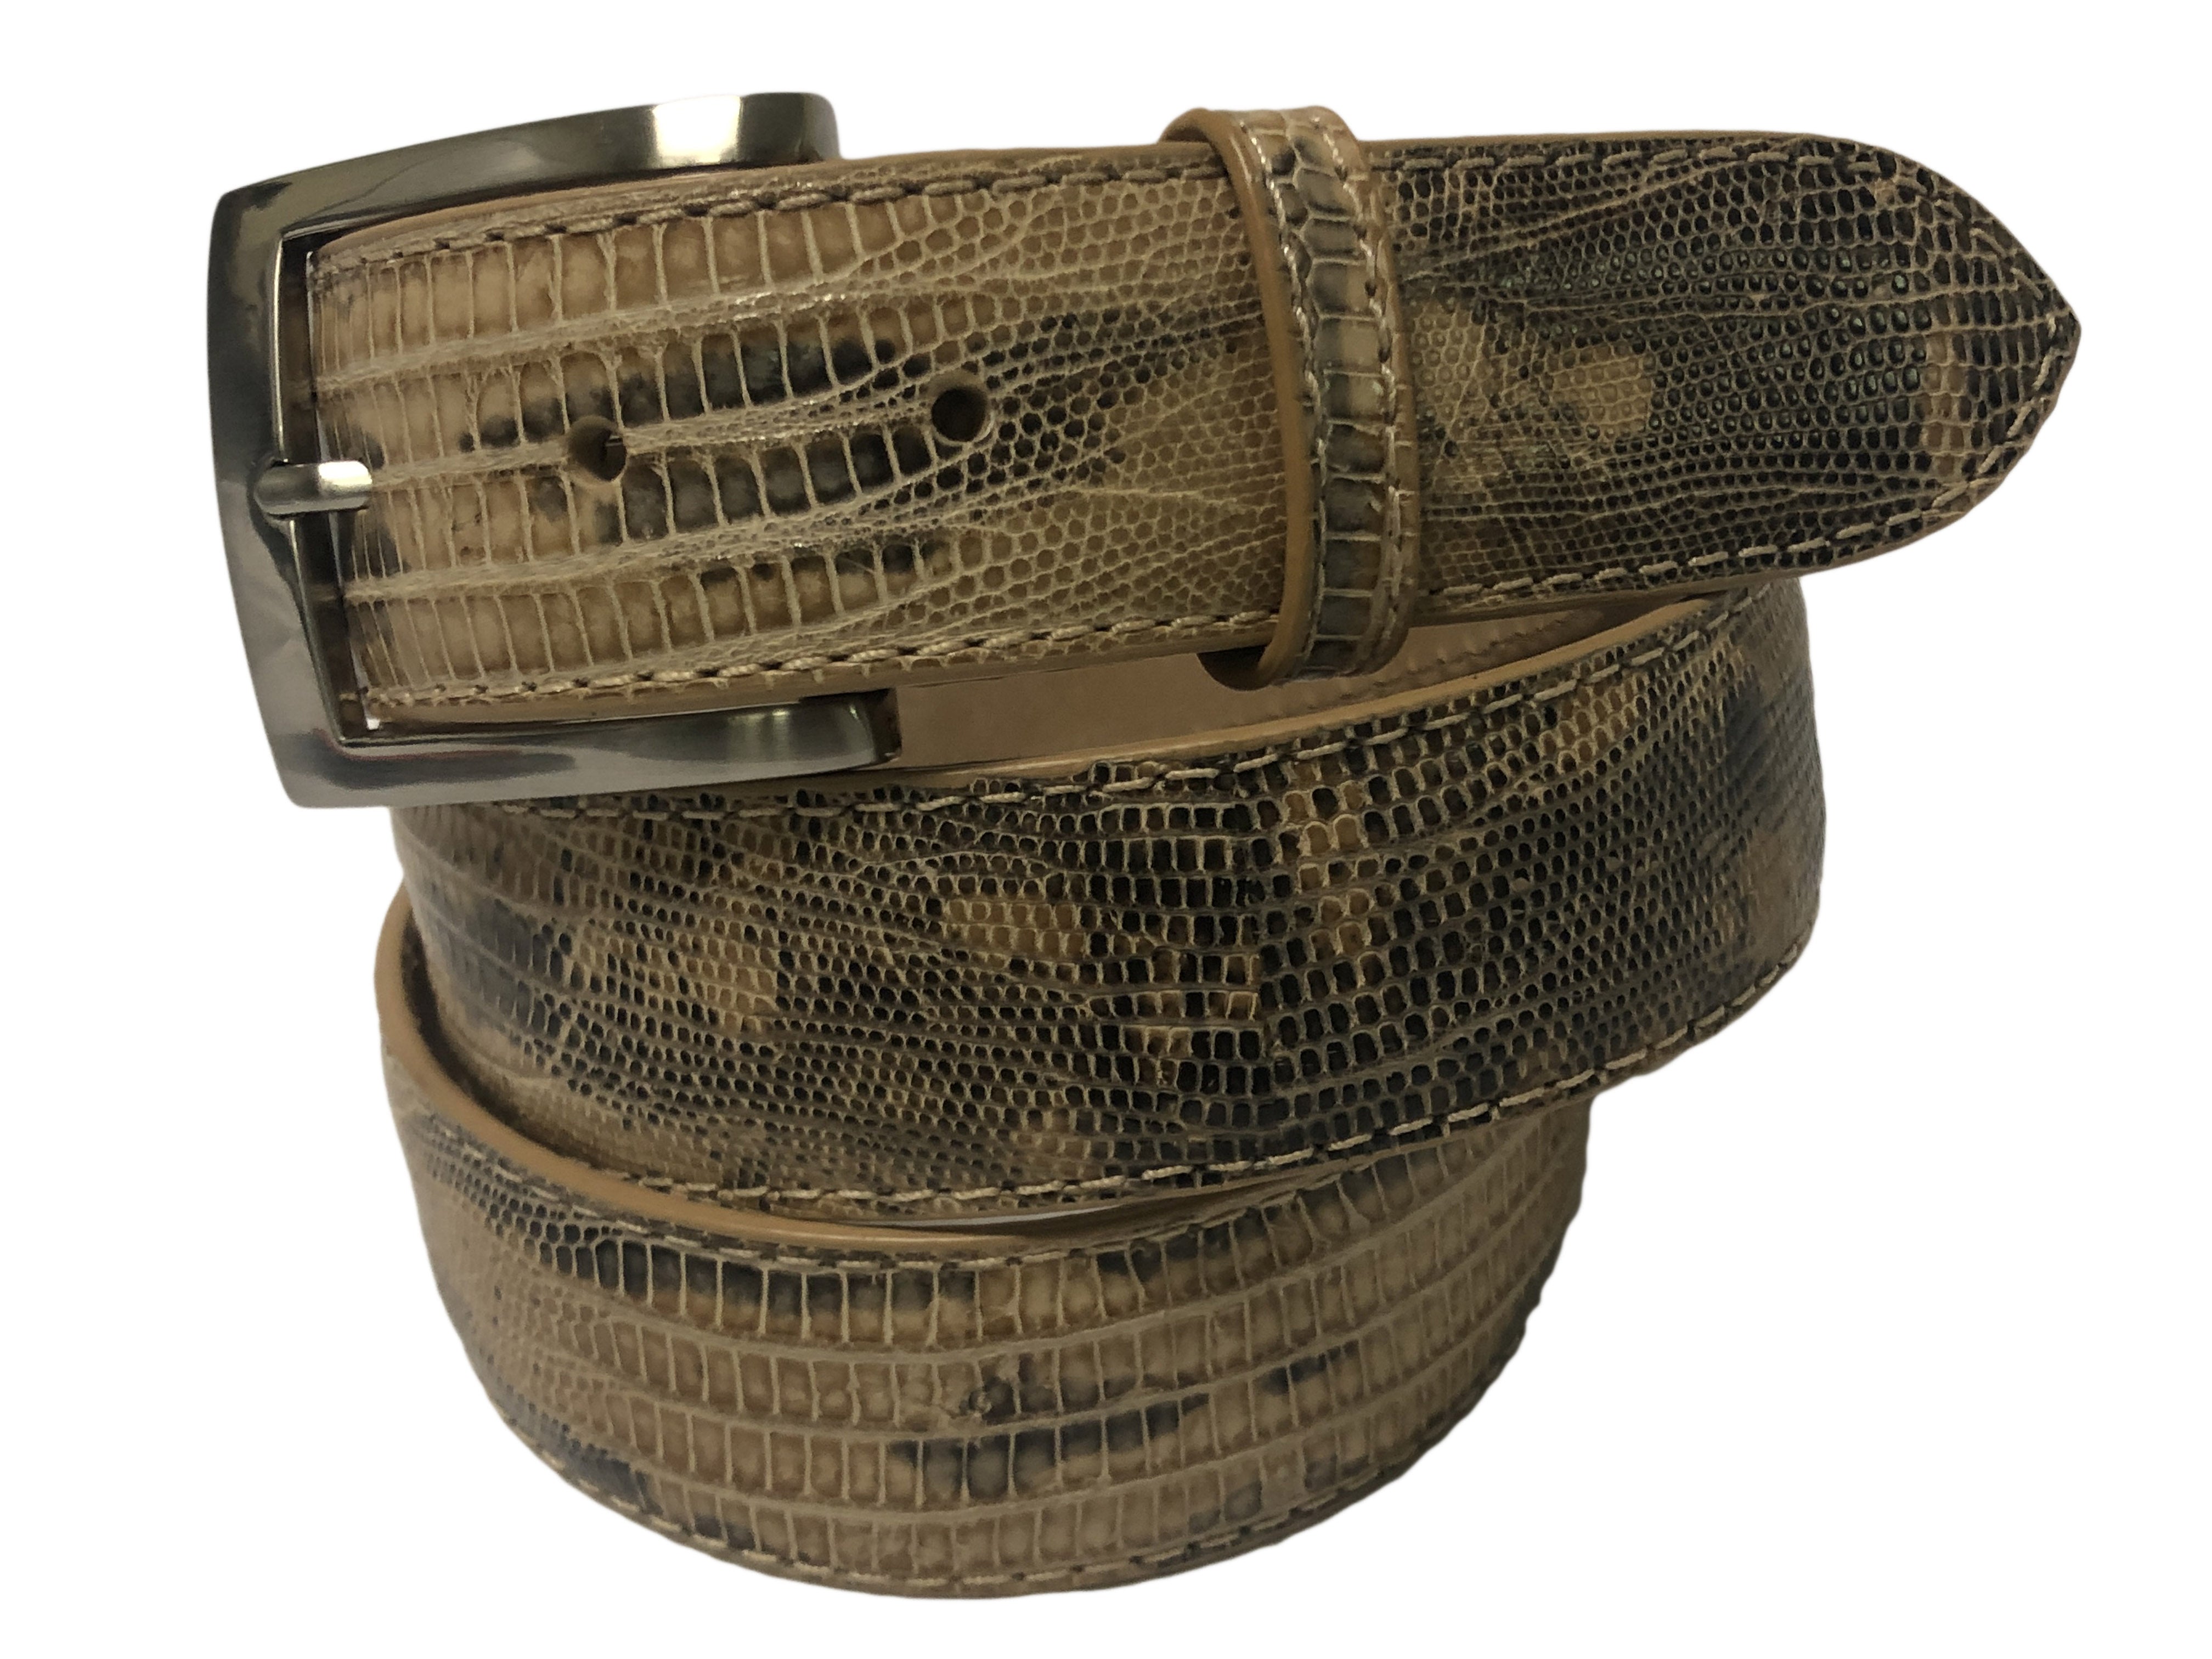 Lizard Skin Handpainted Belt Beige/Brown Natural